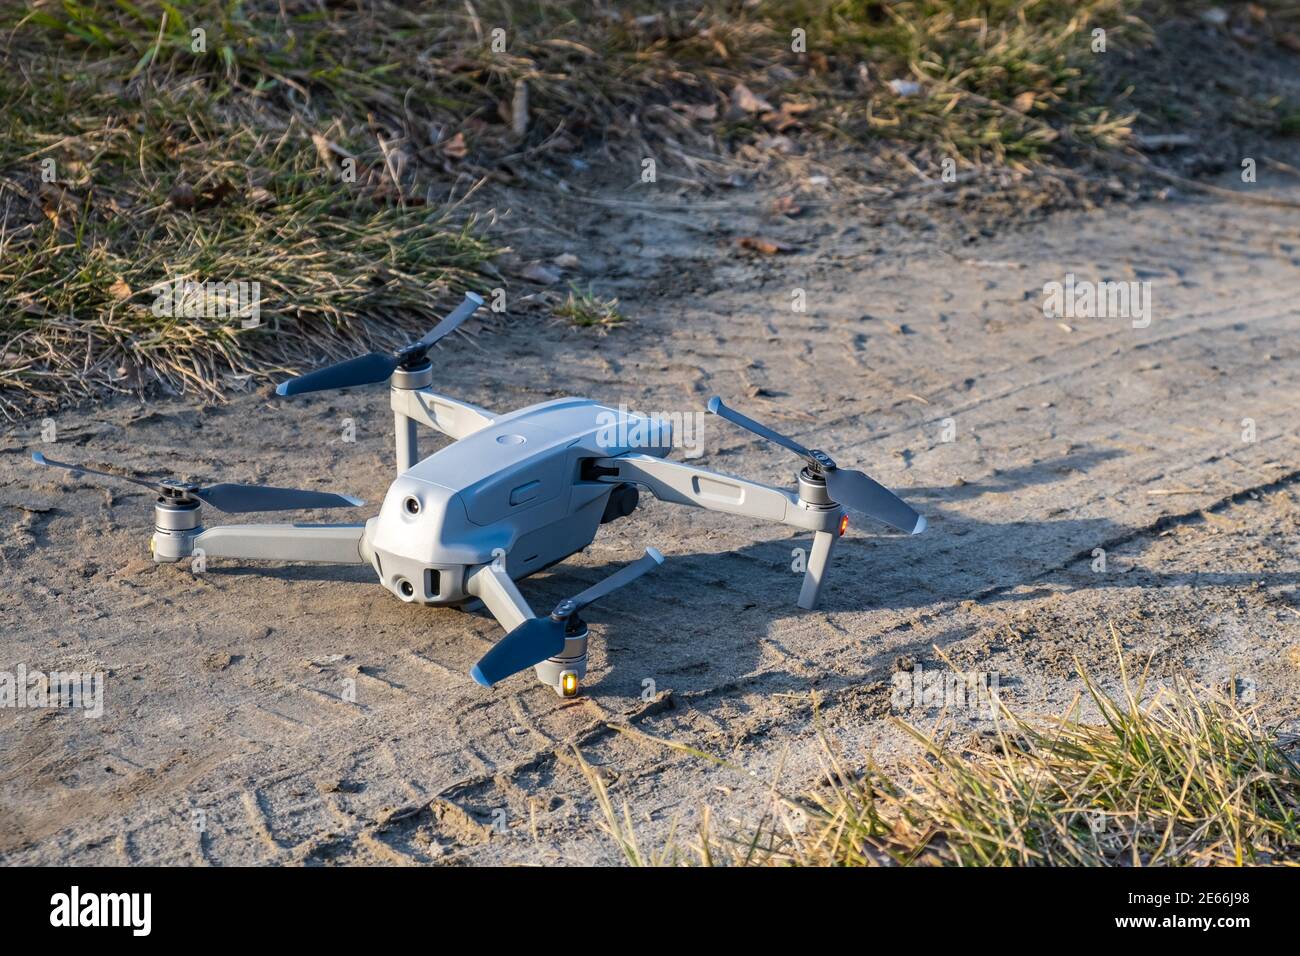 Die Drohne steht auf dem Boden und ist bereit zum Start. Nahaufnahme der montierten grauen Drohne. Fliegende UAV mit einer Hängekamera und Fernbedienung. Stockfoto